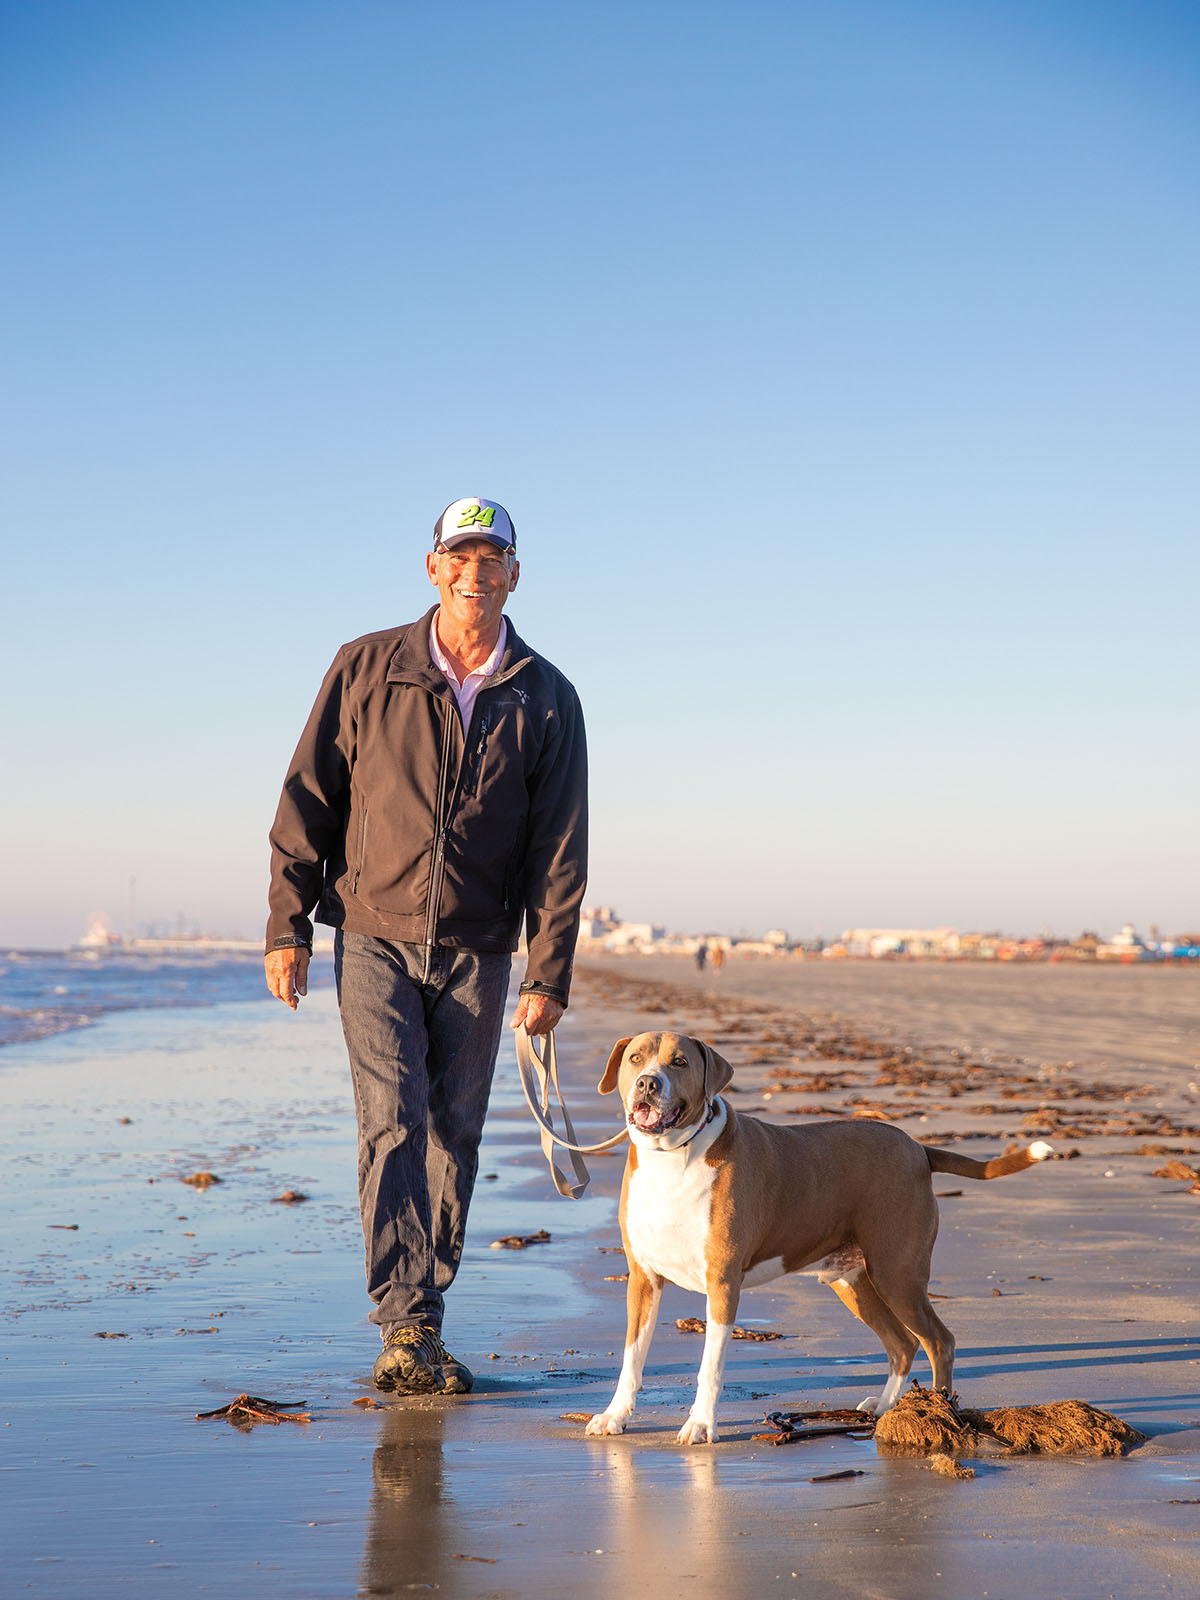 A man in a ball cap walks a dog along a wet sand beach